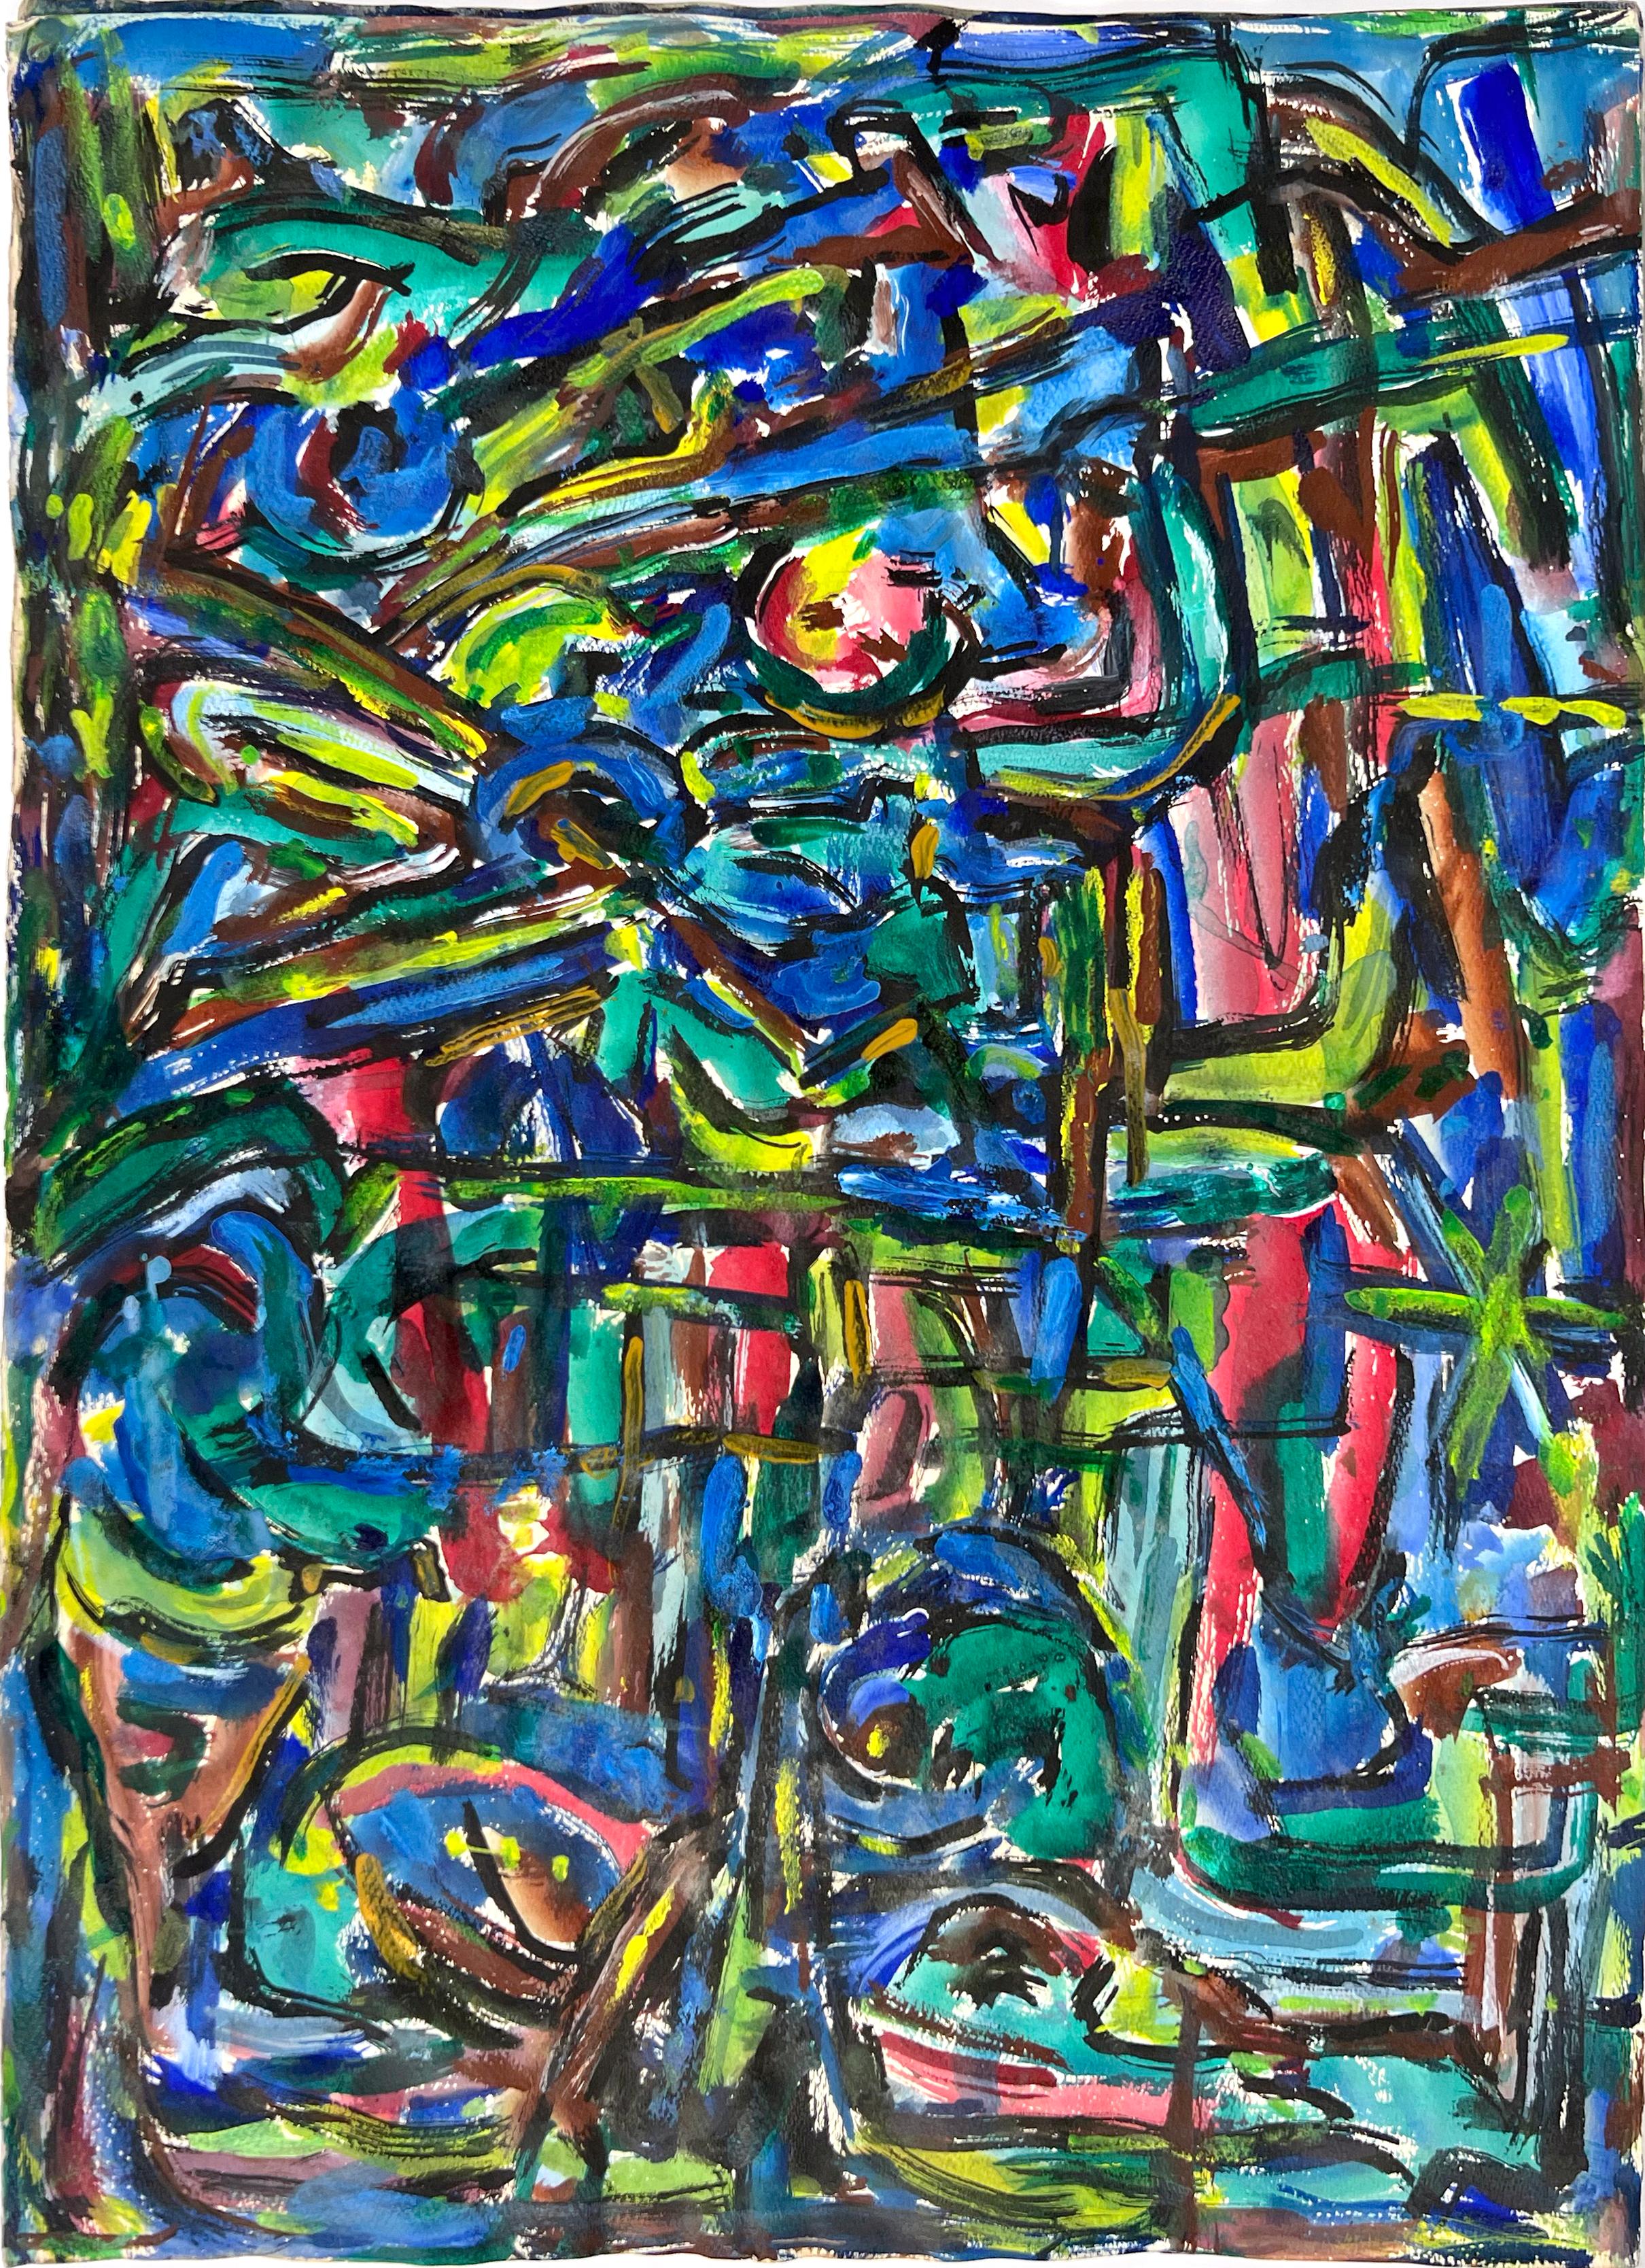 Abstrakter Expressionist Bay Area Fauvist Öl auf Papier Honora Berg Berkeley 1959
Abstraktes expressionistisches Gemälde von Honora Berg (Amerikanerin, 1897-1985) aus der San Francisco Bay Area, ein brillantes fauvistisches Beispiel für die kühnen